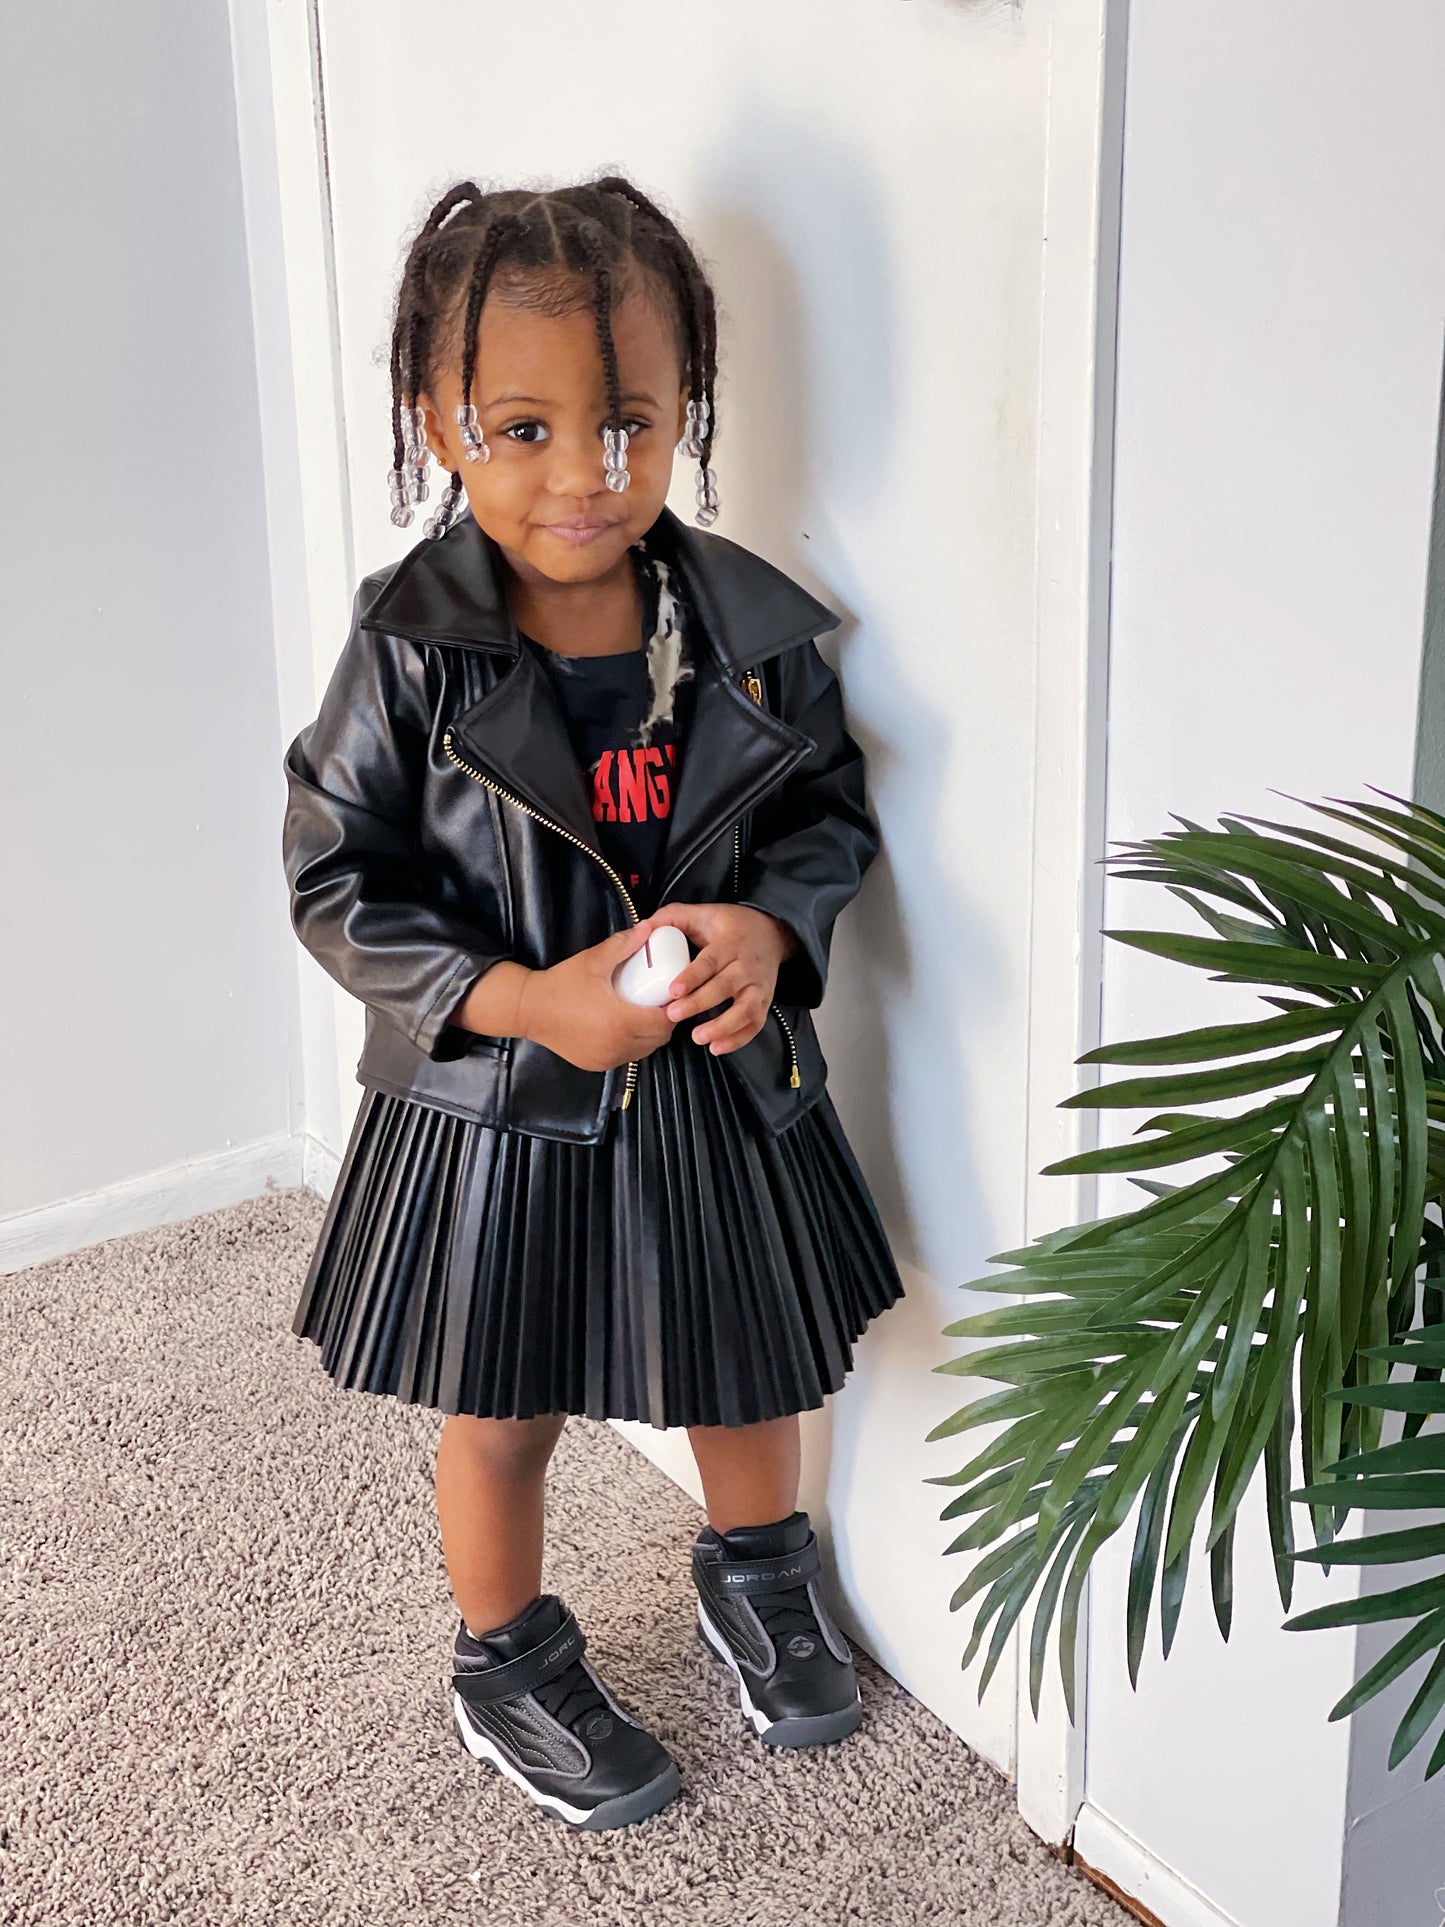 Faux Leather Imitation Black Biker Jacket | Toddler Girl